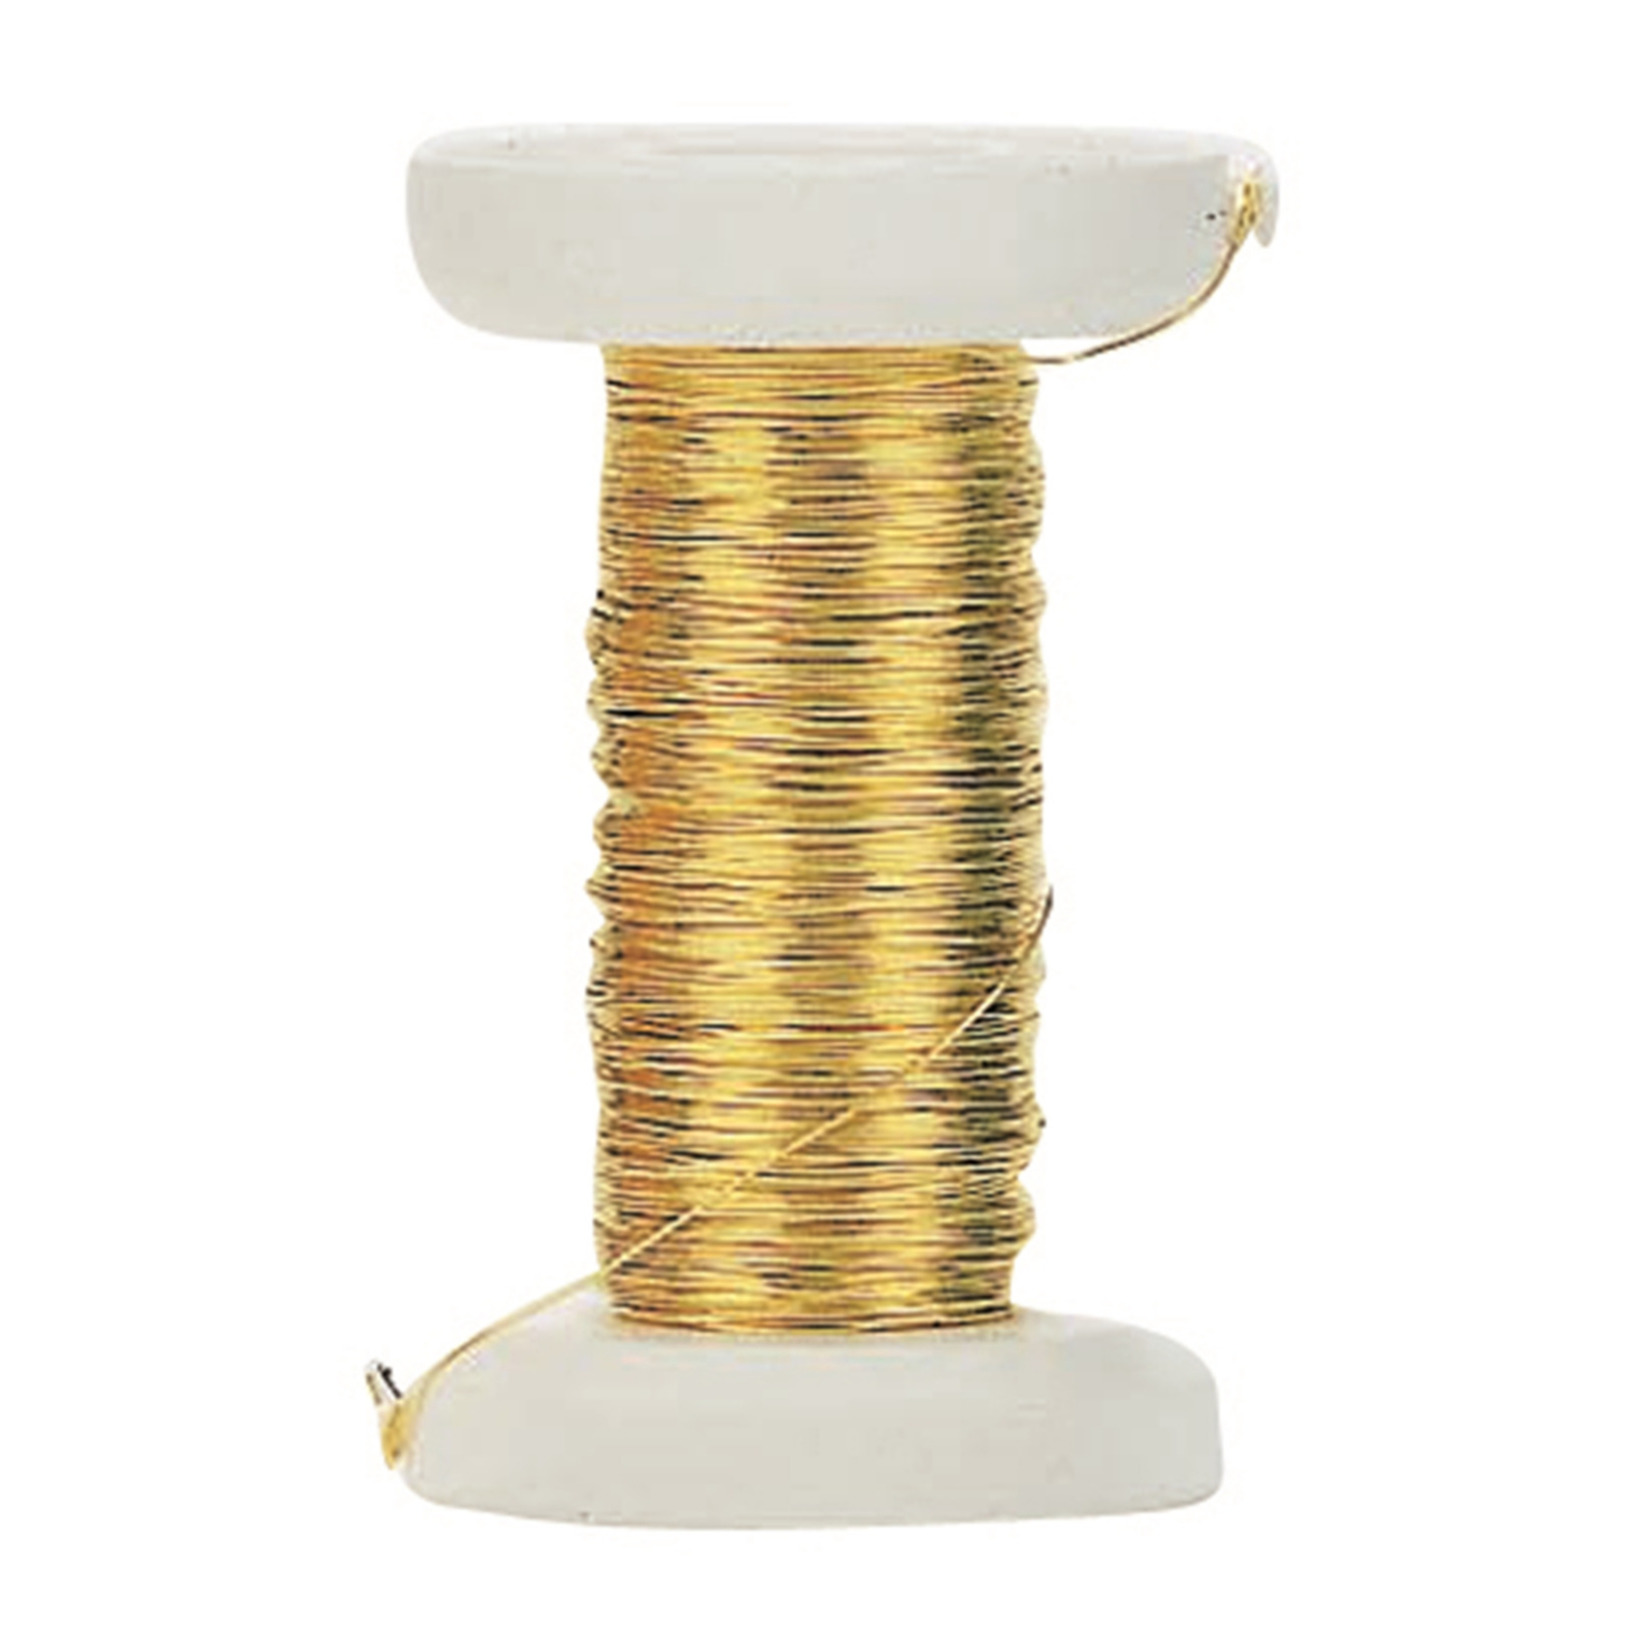 Goud metallic bind draad-koord van 0,4 mm dikte 40 meter